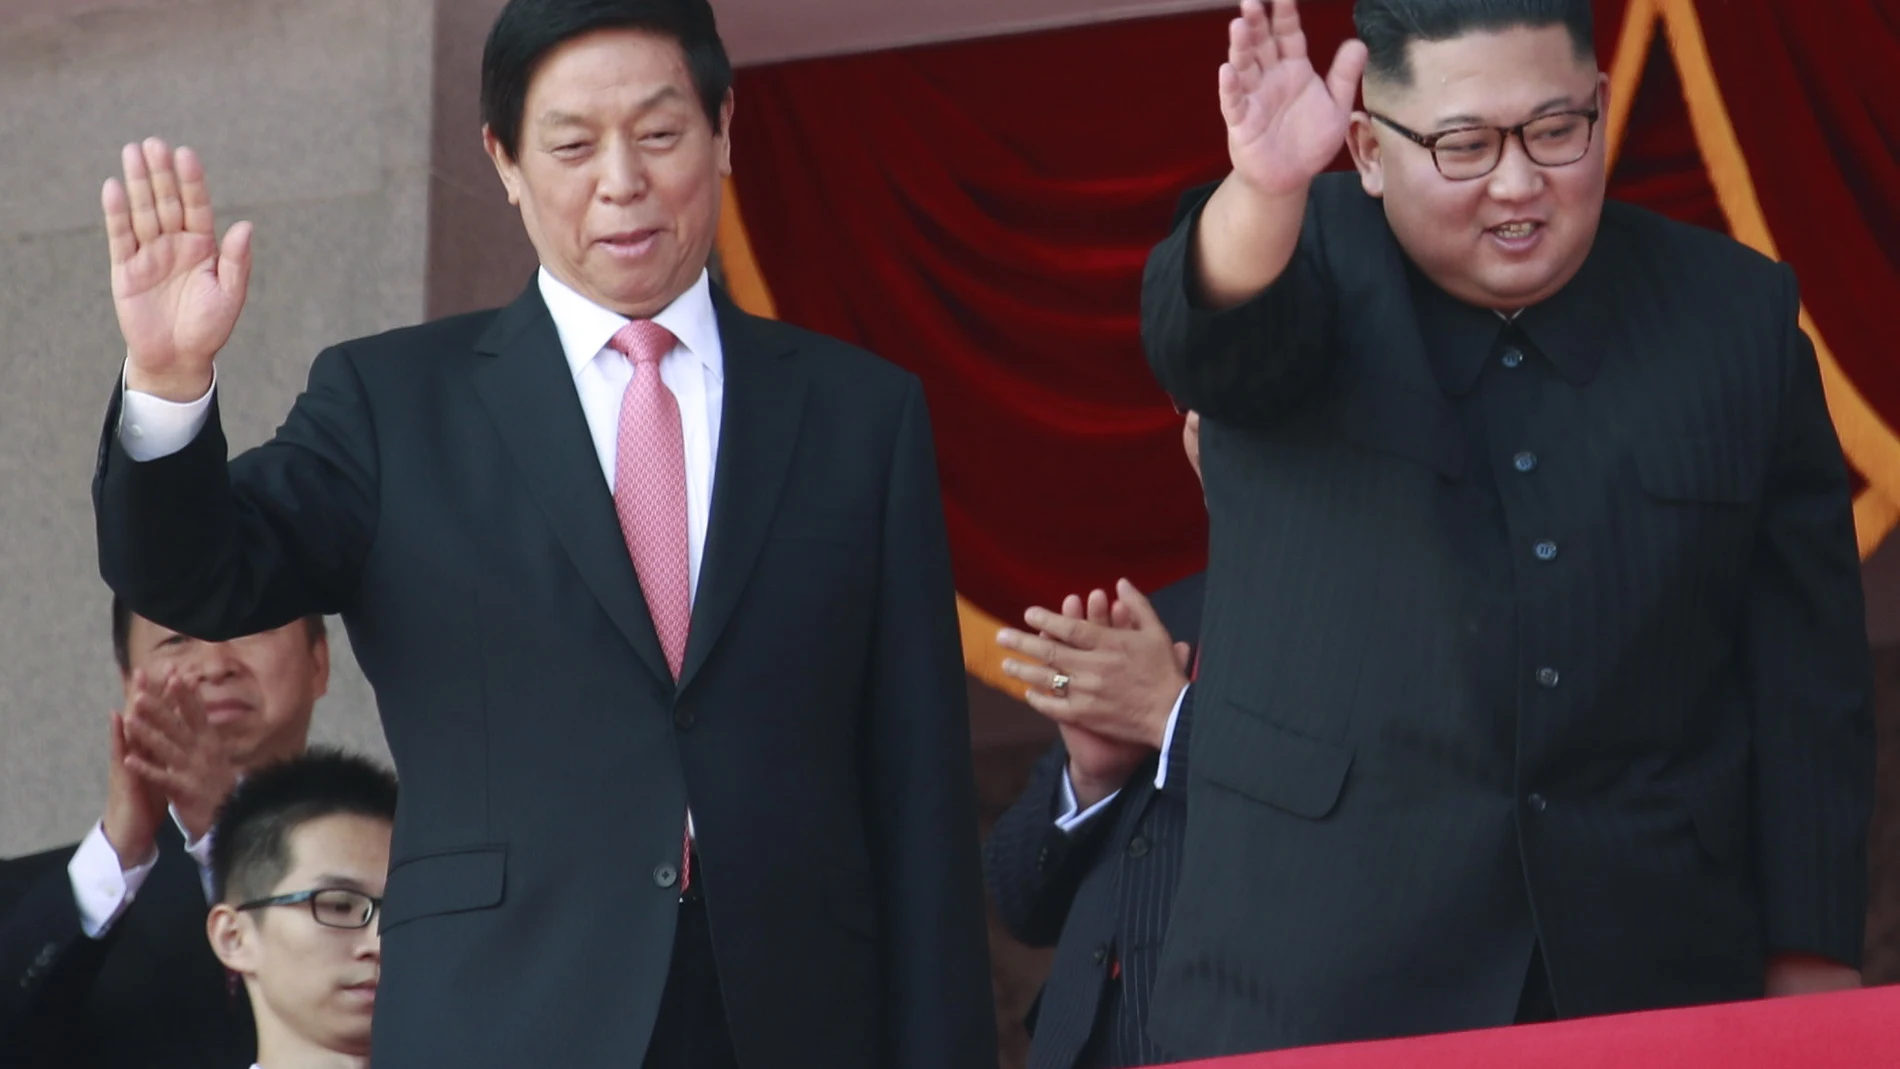 El líder norcoreano, Kim Jong-un, junto a Li Zhanshu, miembro del Comité Permanente del Politburó y considerado número tres del Partido Comunista chino, durante el desfile militar, en Pyongyang